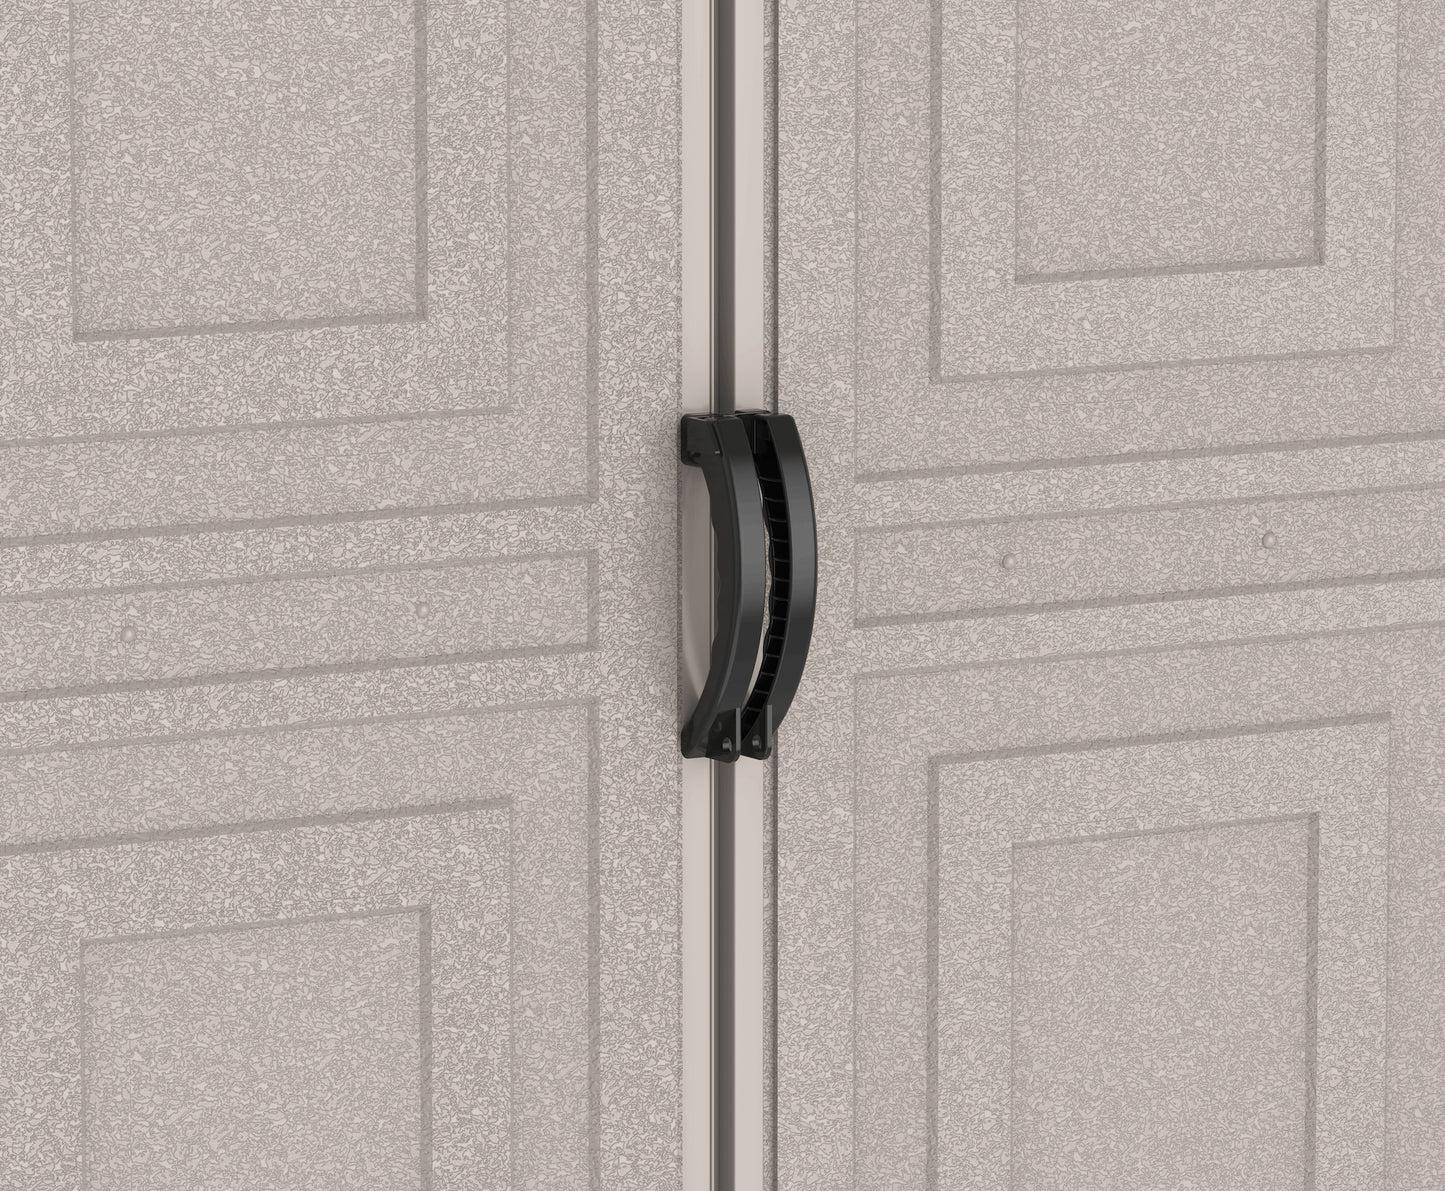 Duramax Vinyl Garage 10.5x15.5 w/ Foundation 2 Windows 15026 close up locking door handle